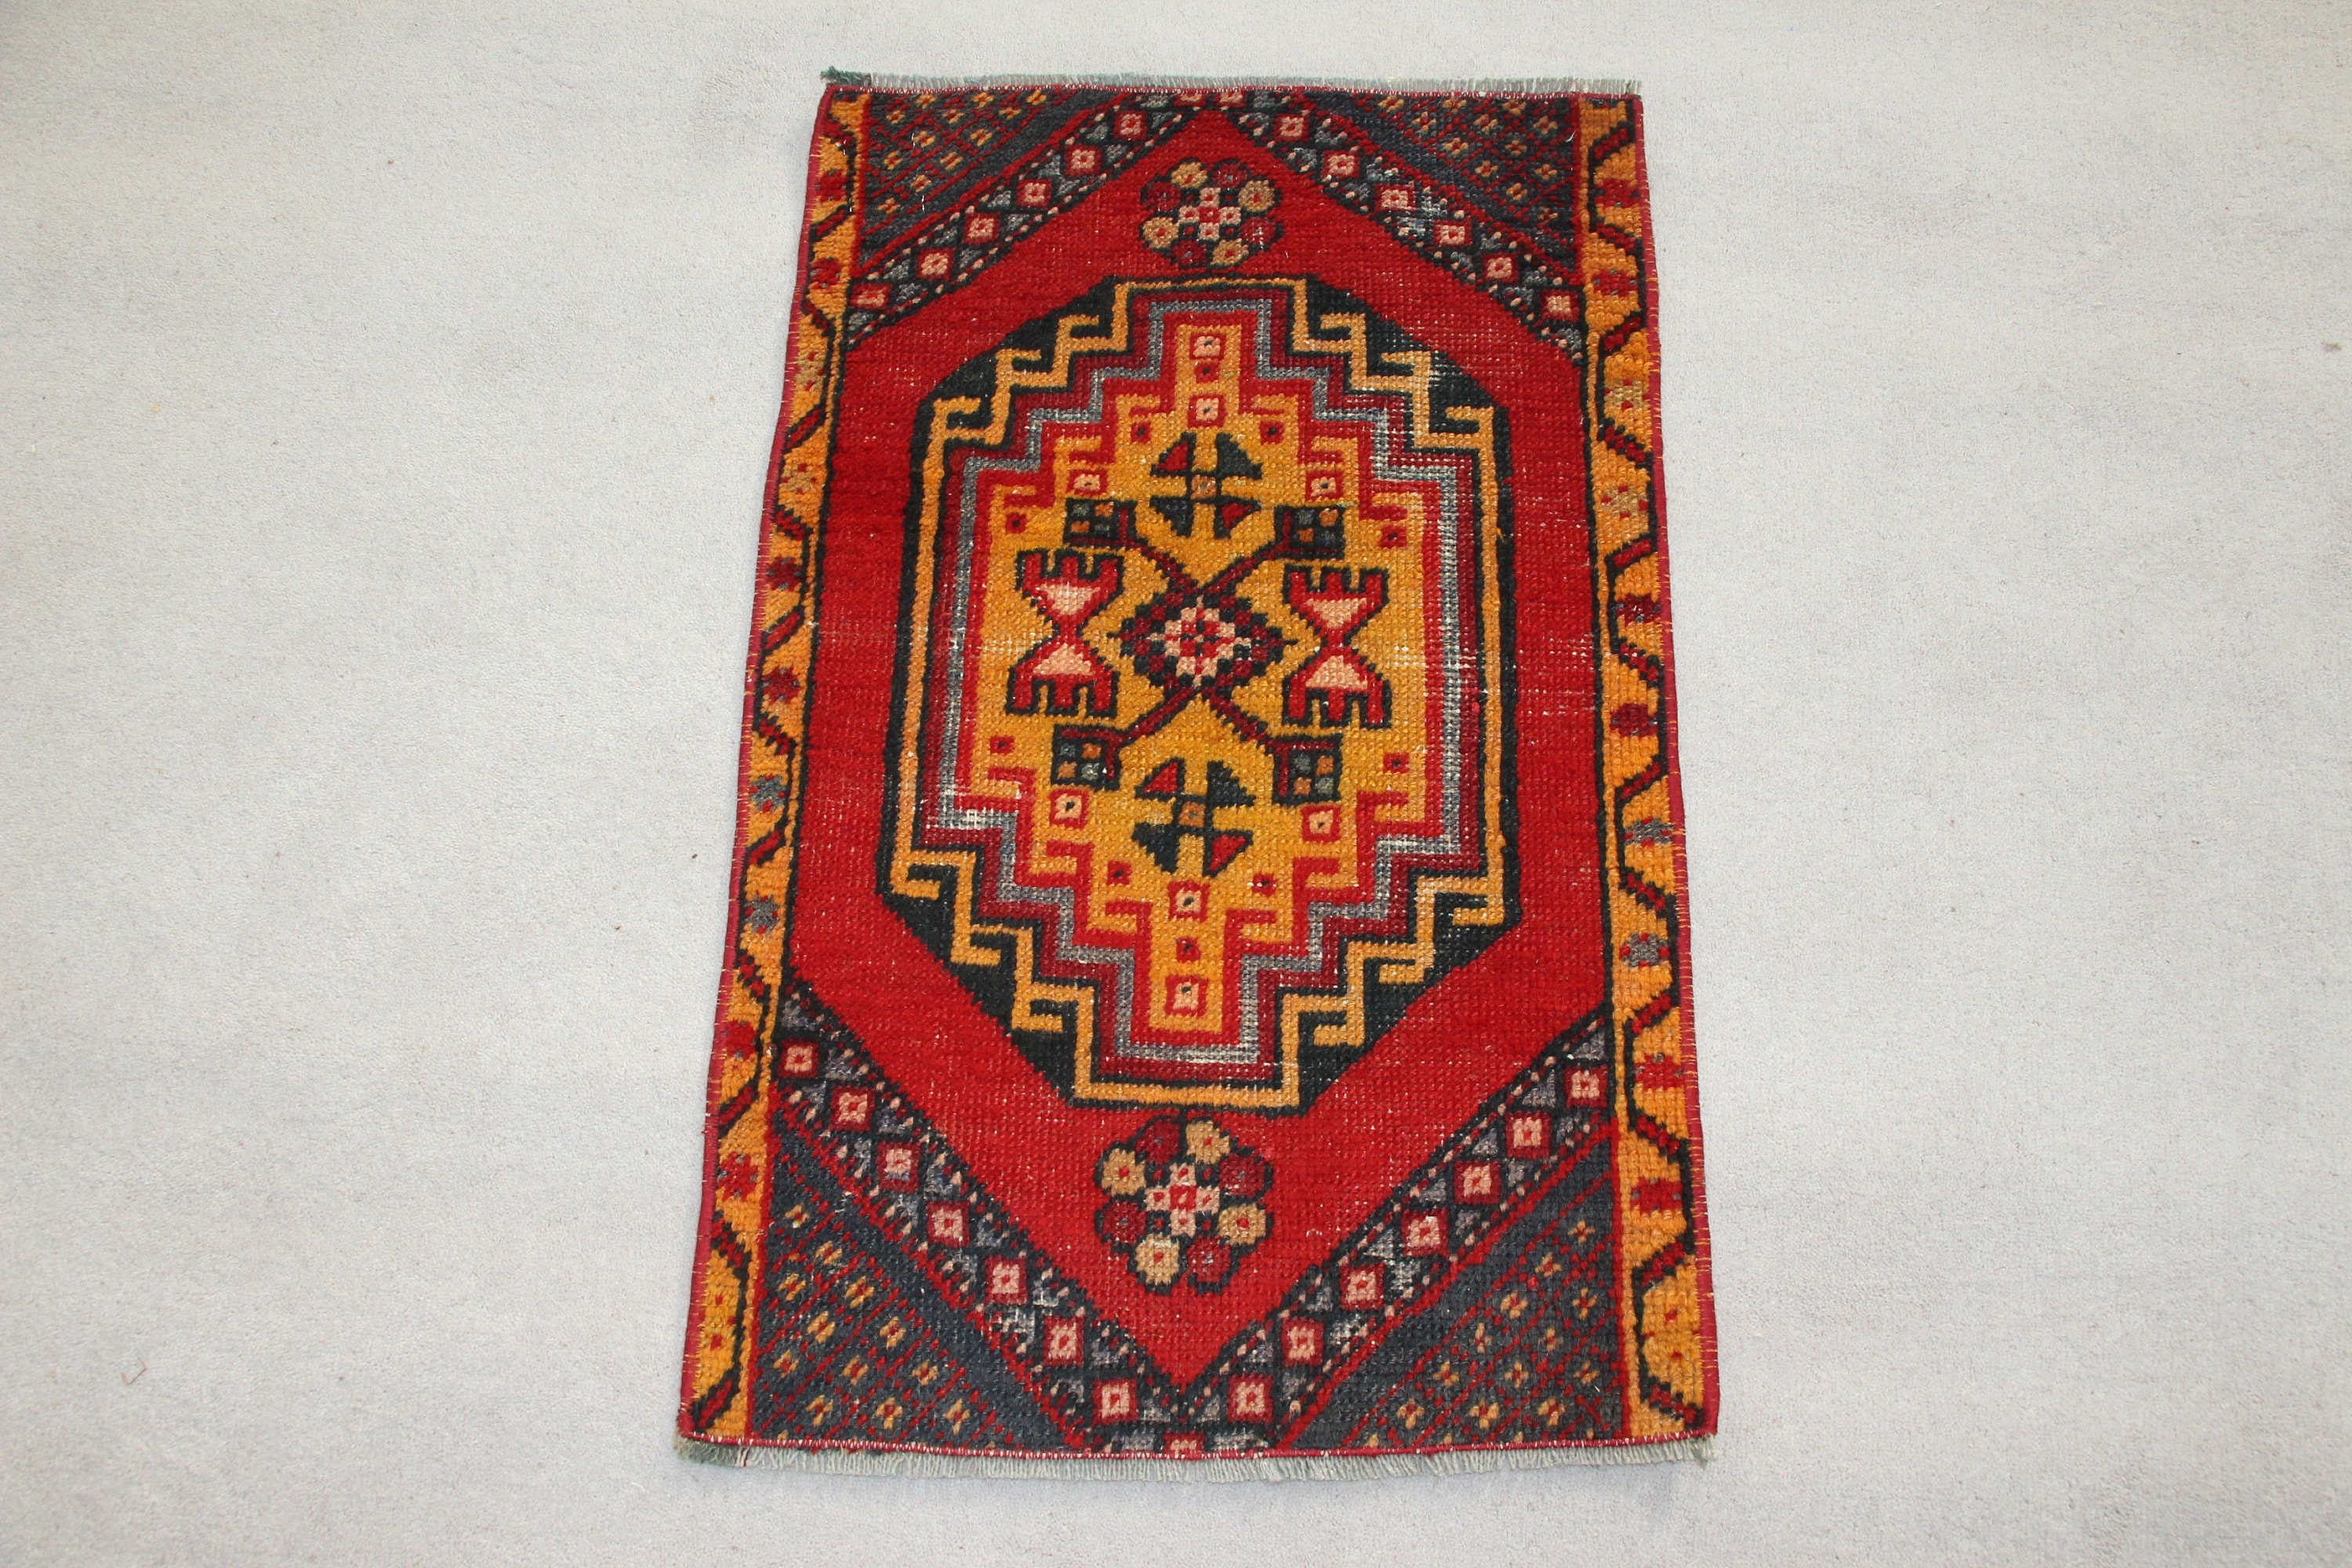 Turkish Rugs, Oriental Rugs, Red Floor Rug, 1.6x2.6 ft Small Rugs, Wall Hanging Rugs, Bedroom Rug, Office Rugs, Bath Rug, Vintage Rugs